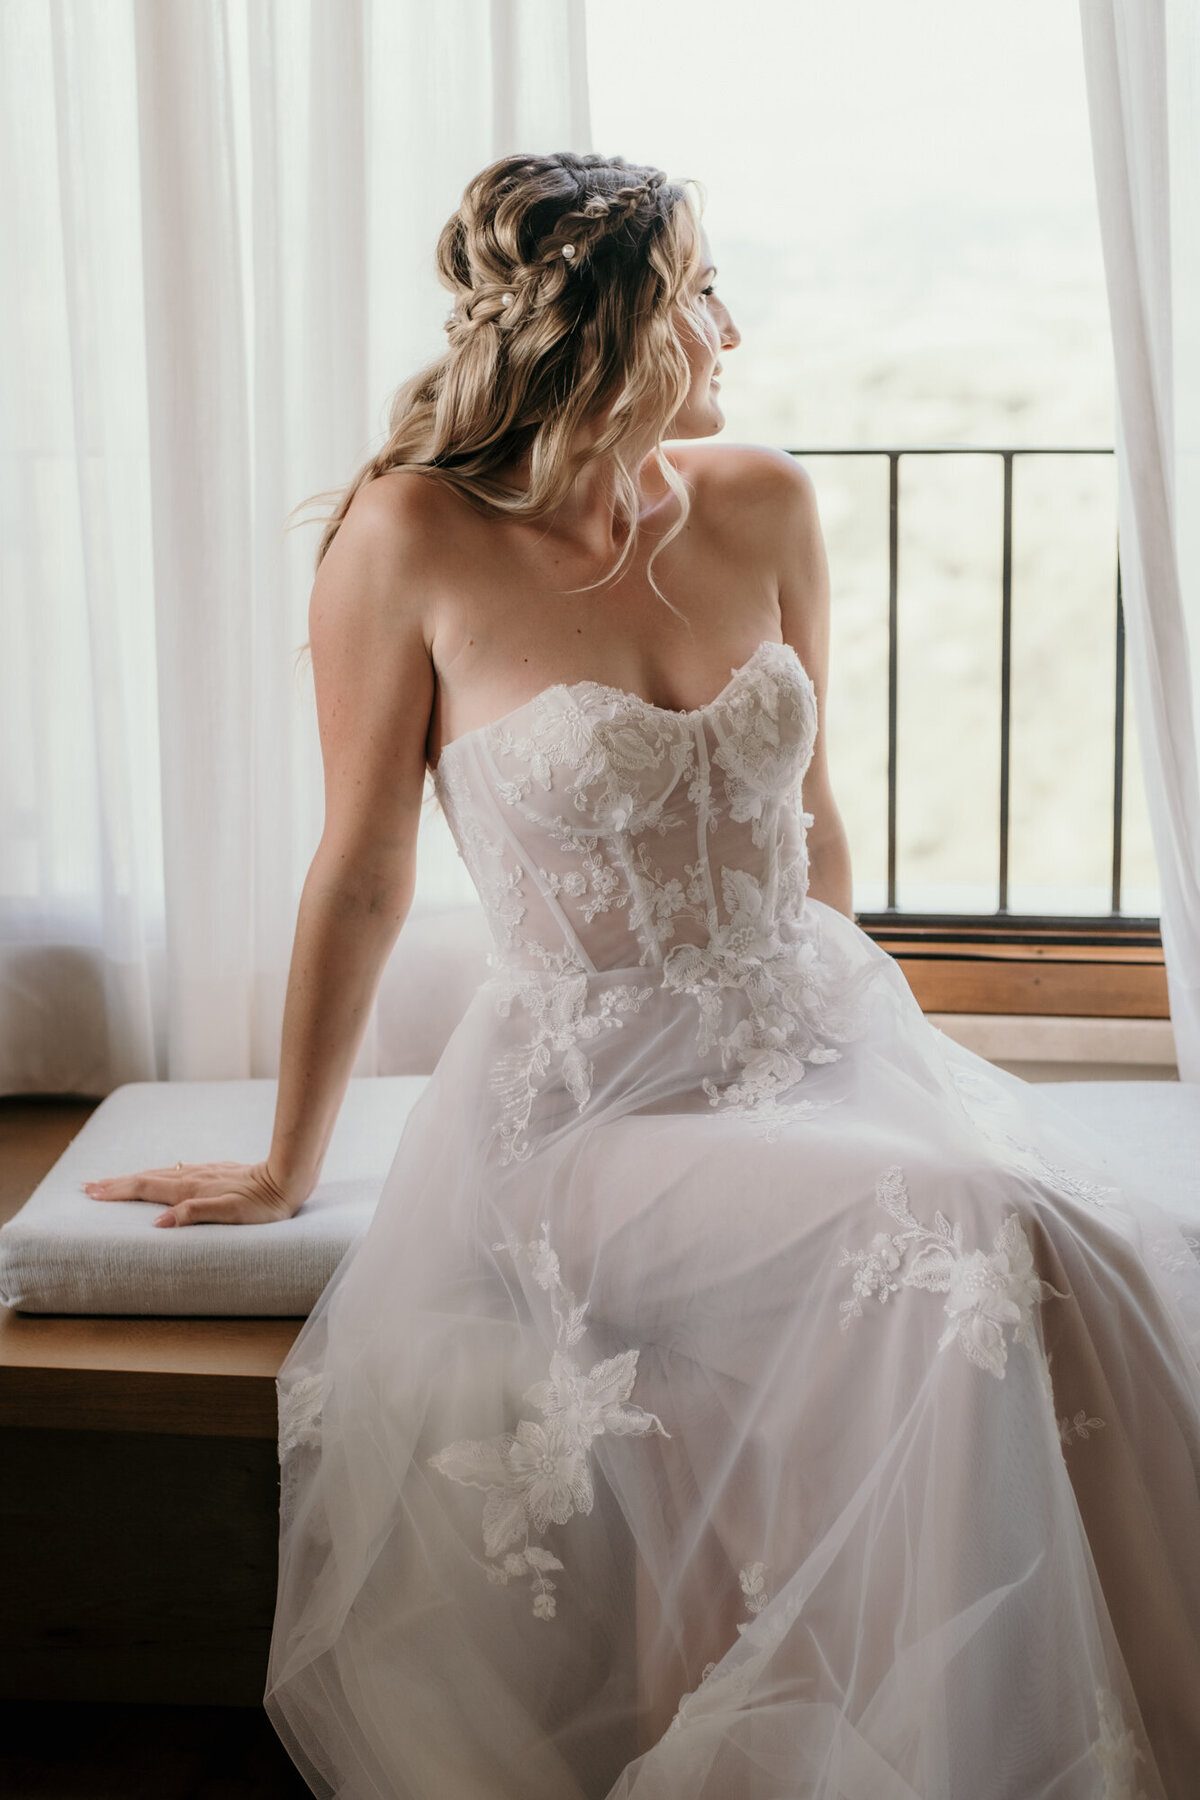 Die Braut sitzt fertig gestylt auf einem Fensterbrett und blickt verträumt aus dem Fenster.